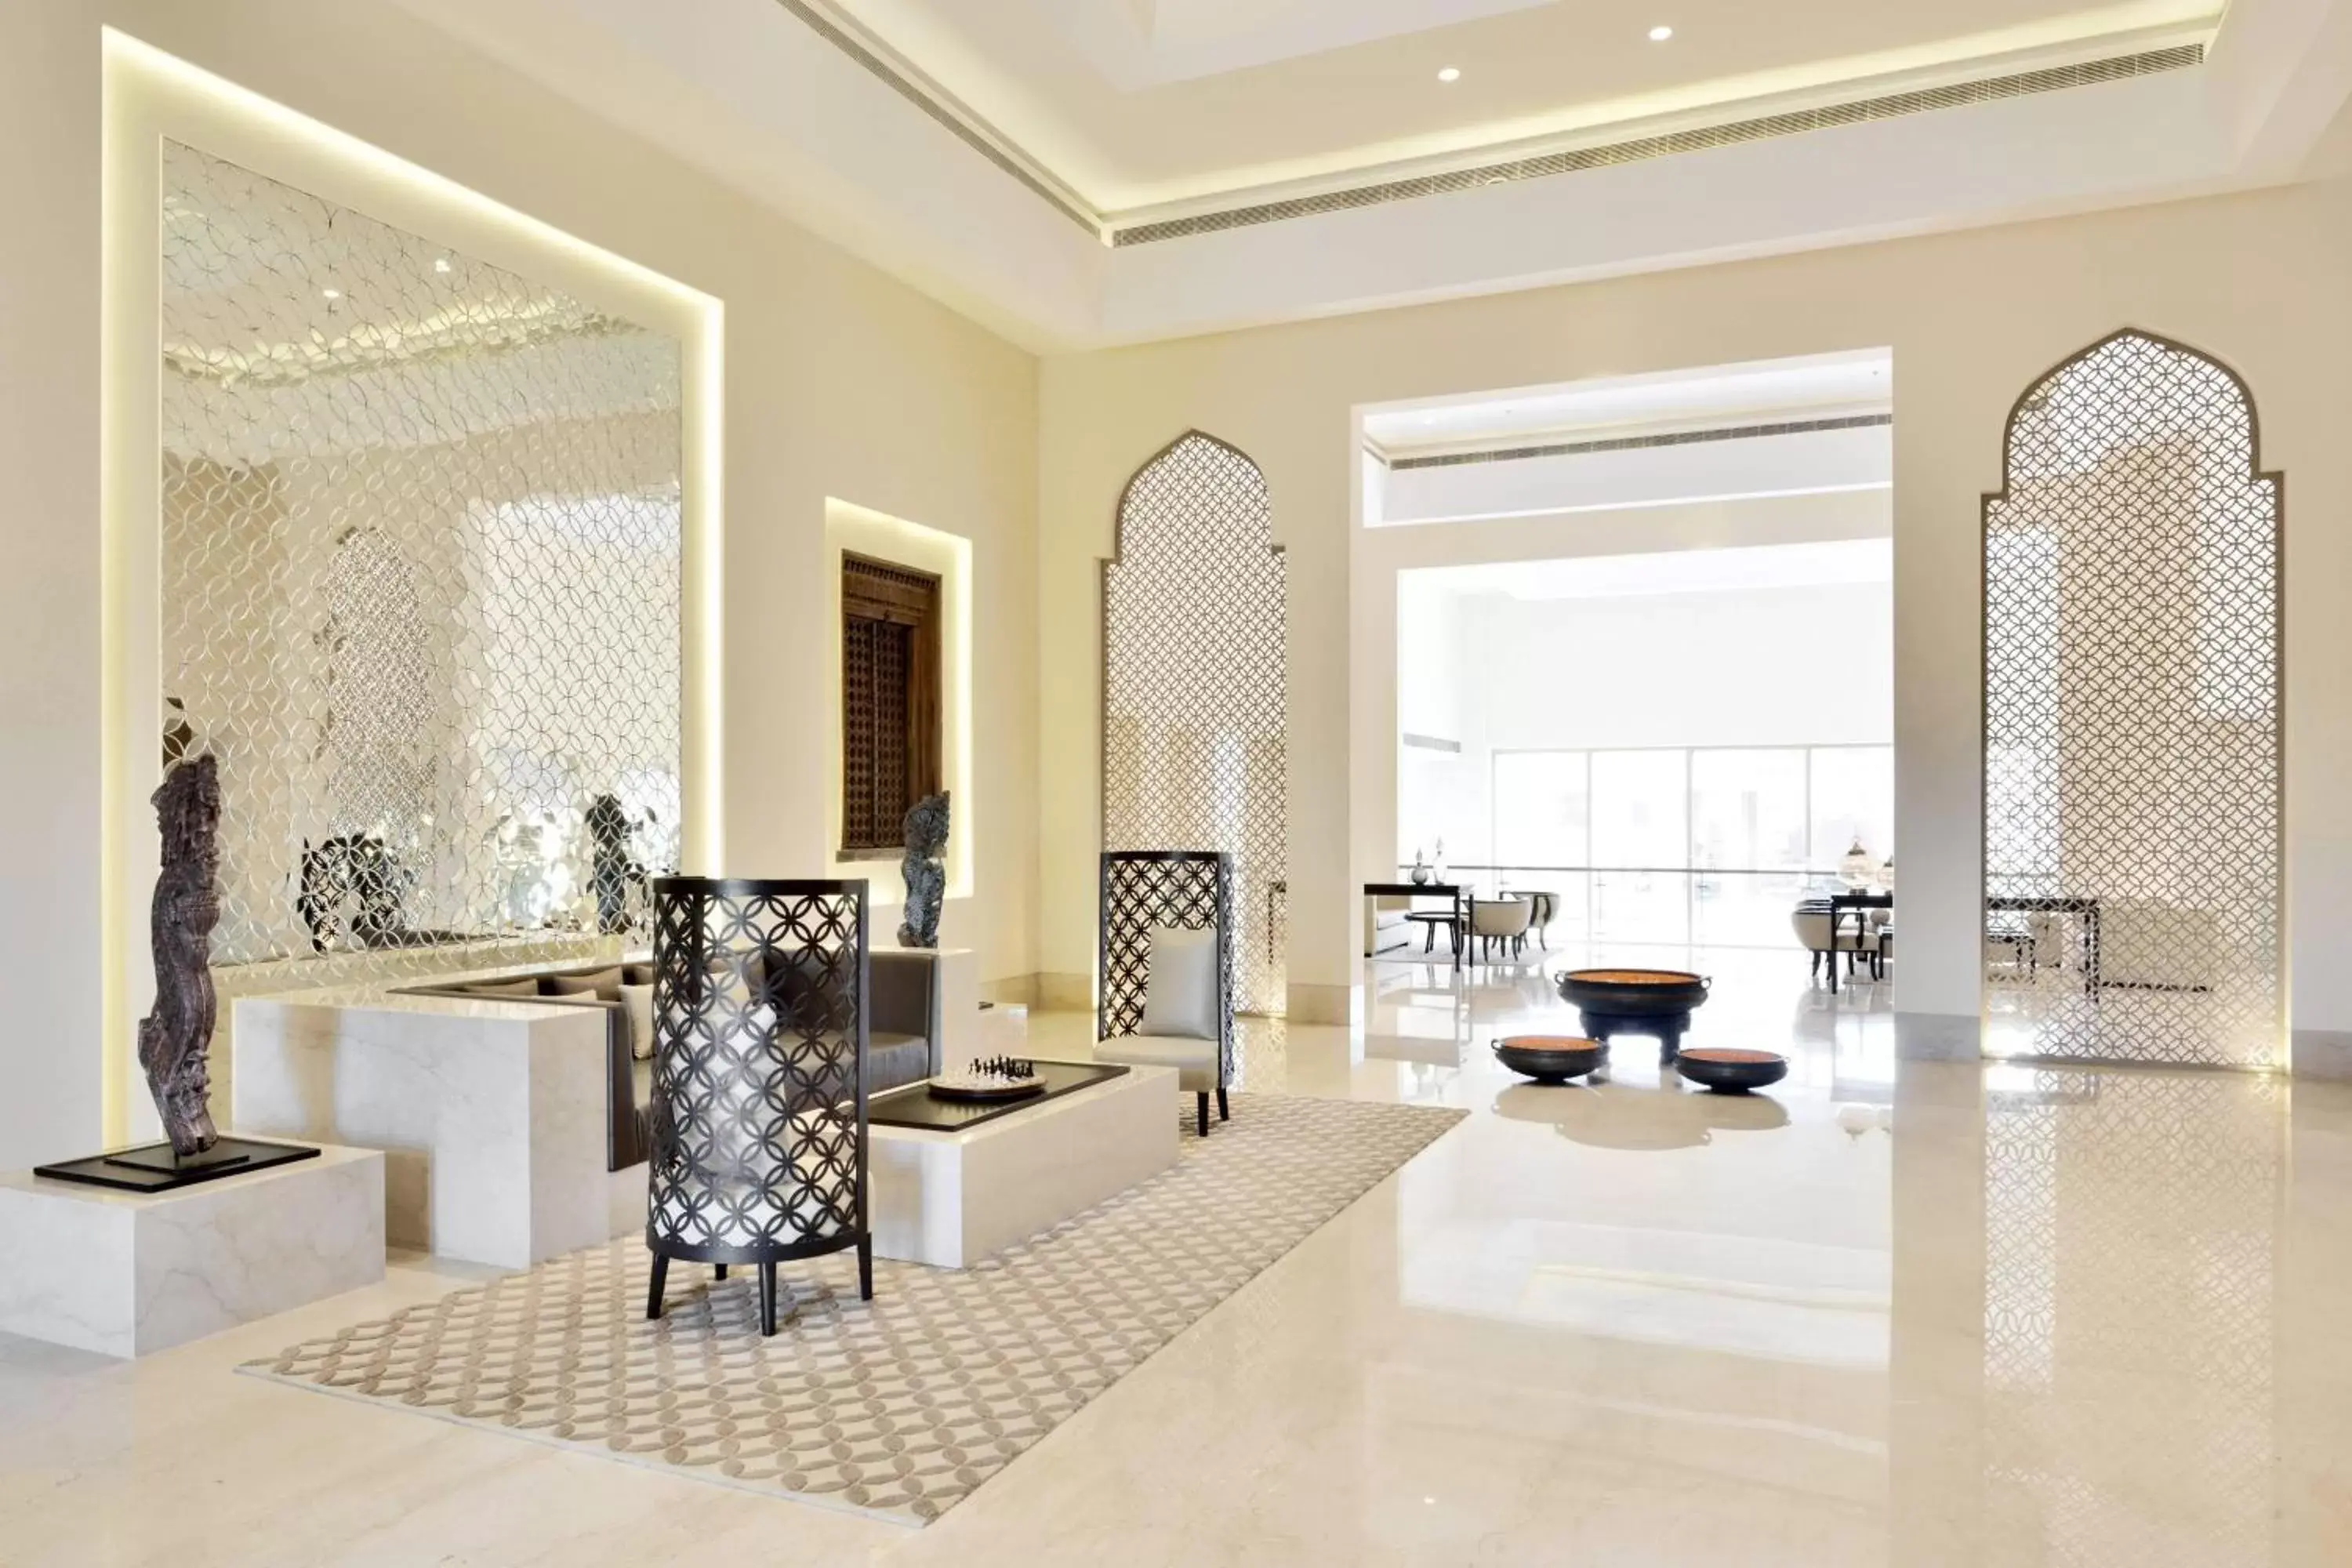 Lobby or reception in Jaisalmer Marriott Resort & Spa